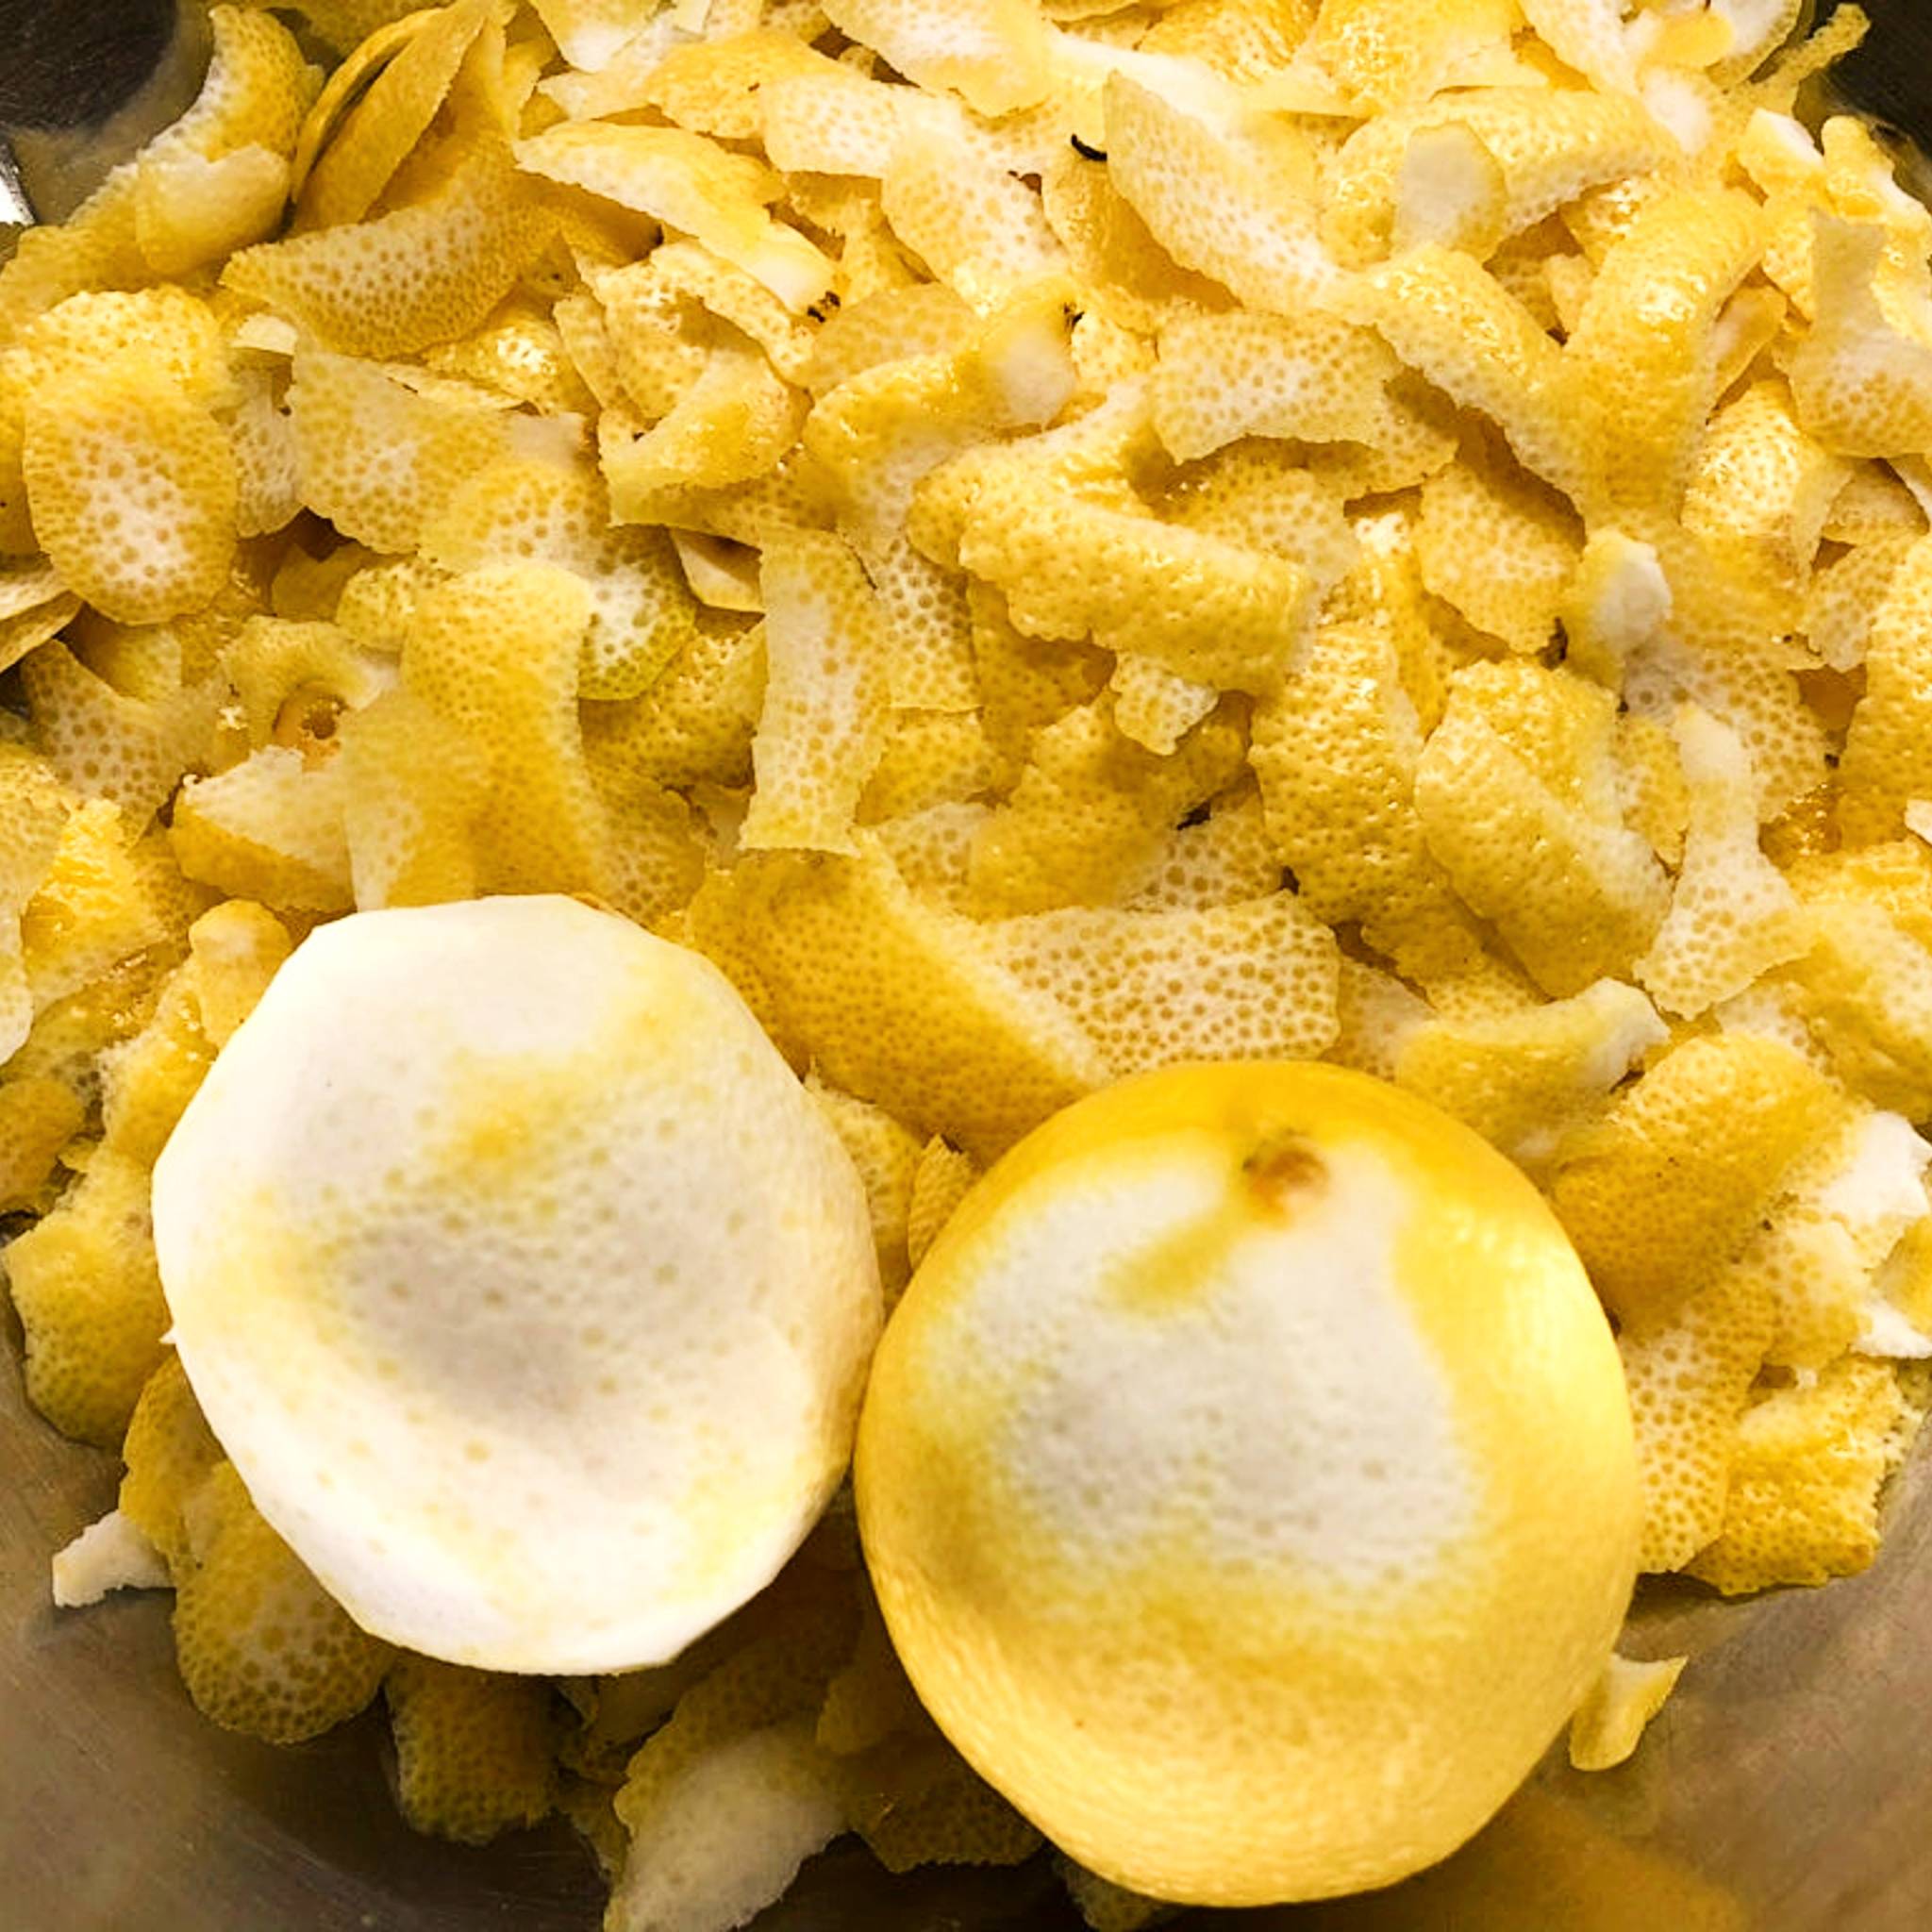 Lemons zested for lemon infused honey from Mill Creek Apiary